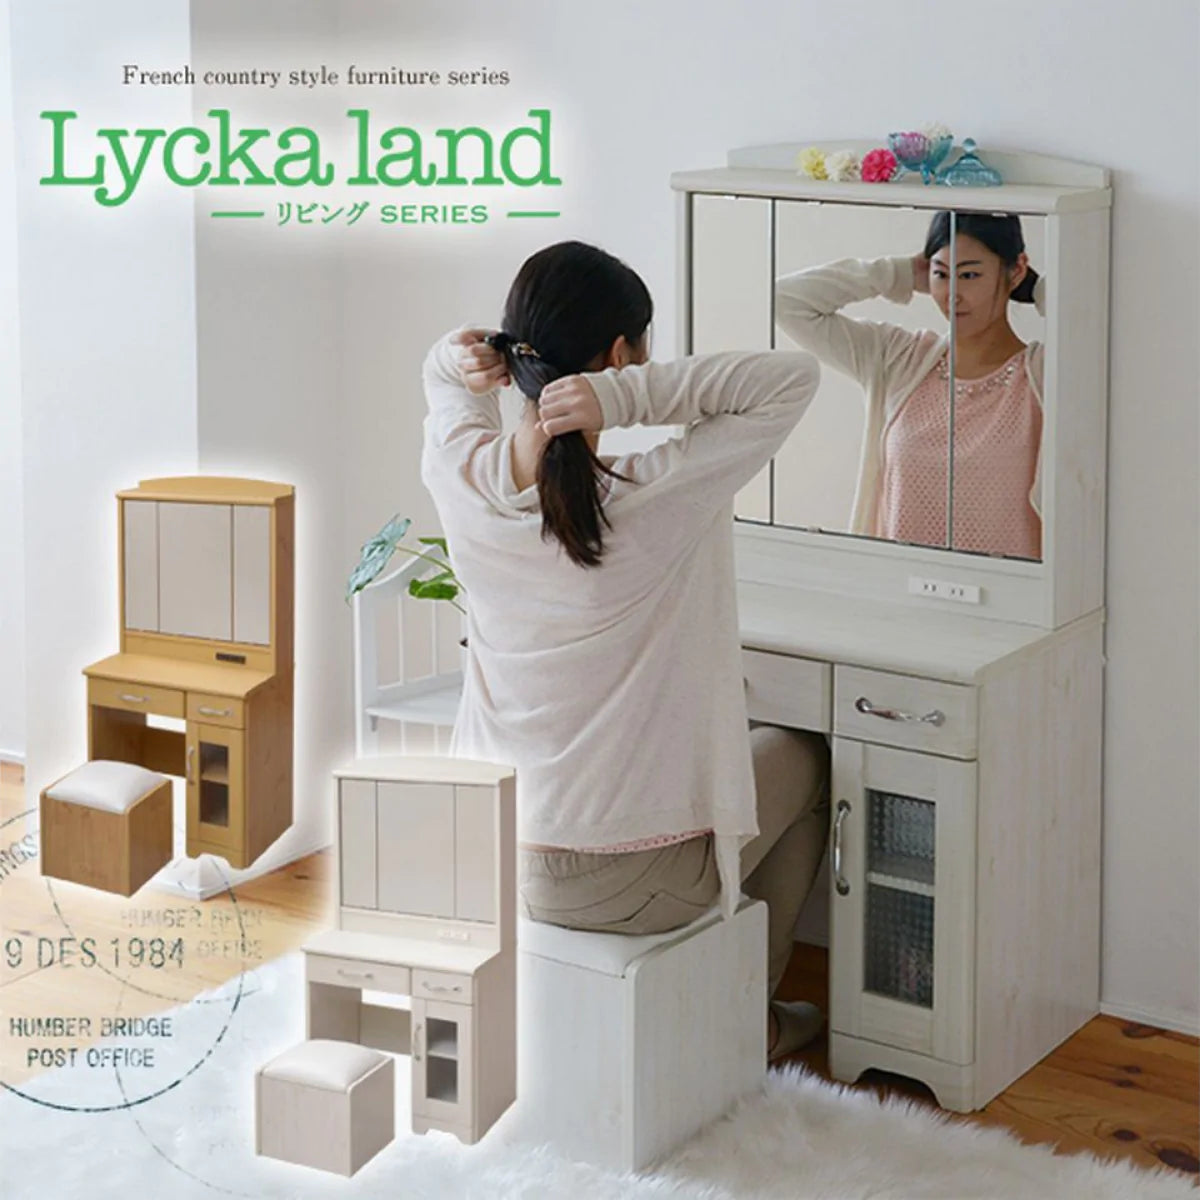 【お客様組立品】Lycka land リビングシリーズ 三面鏡ドレッサー スツール付き FLL-0034【全2色】